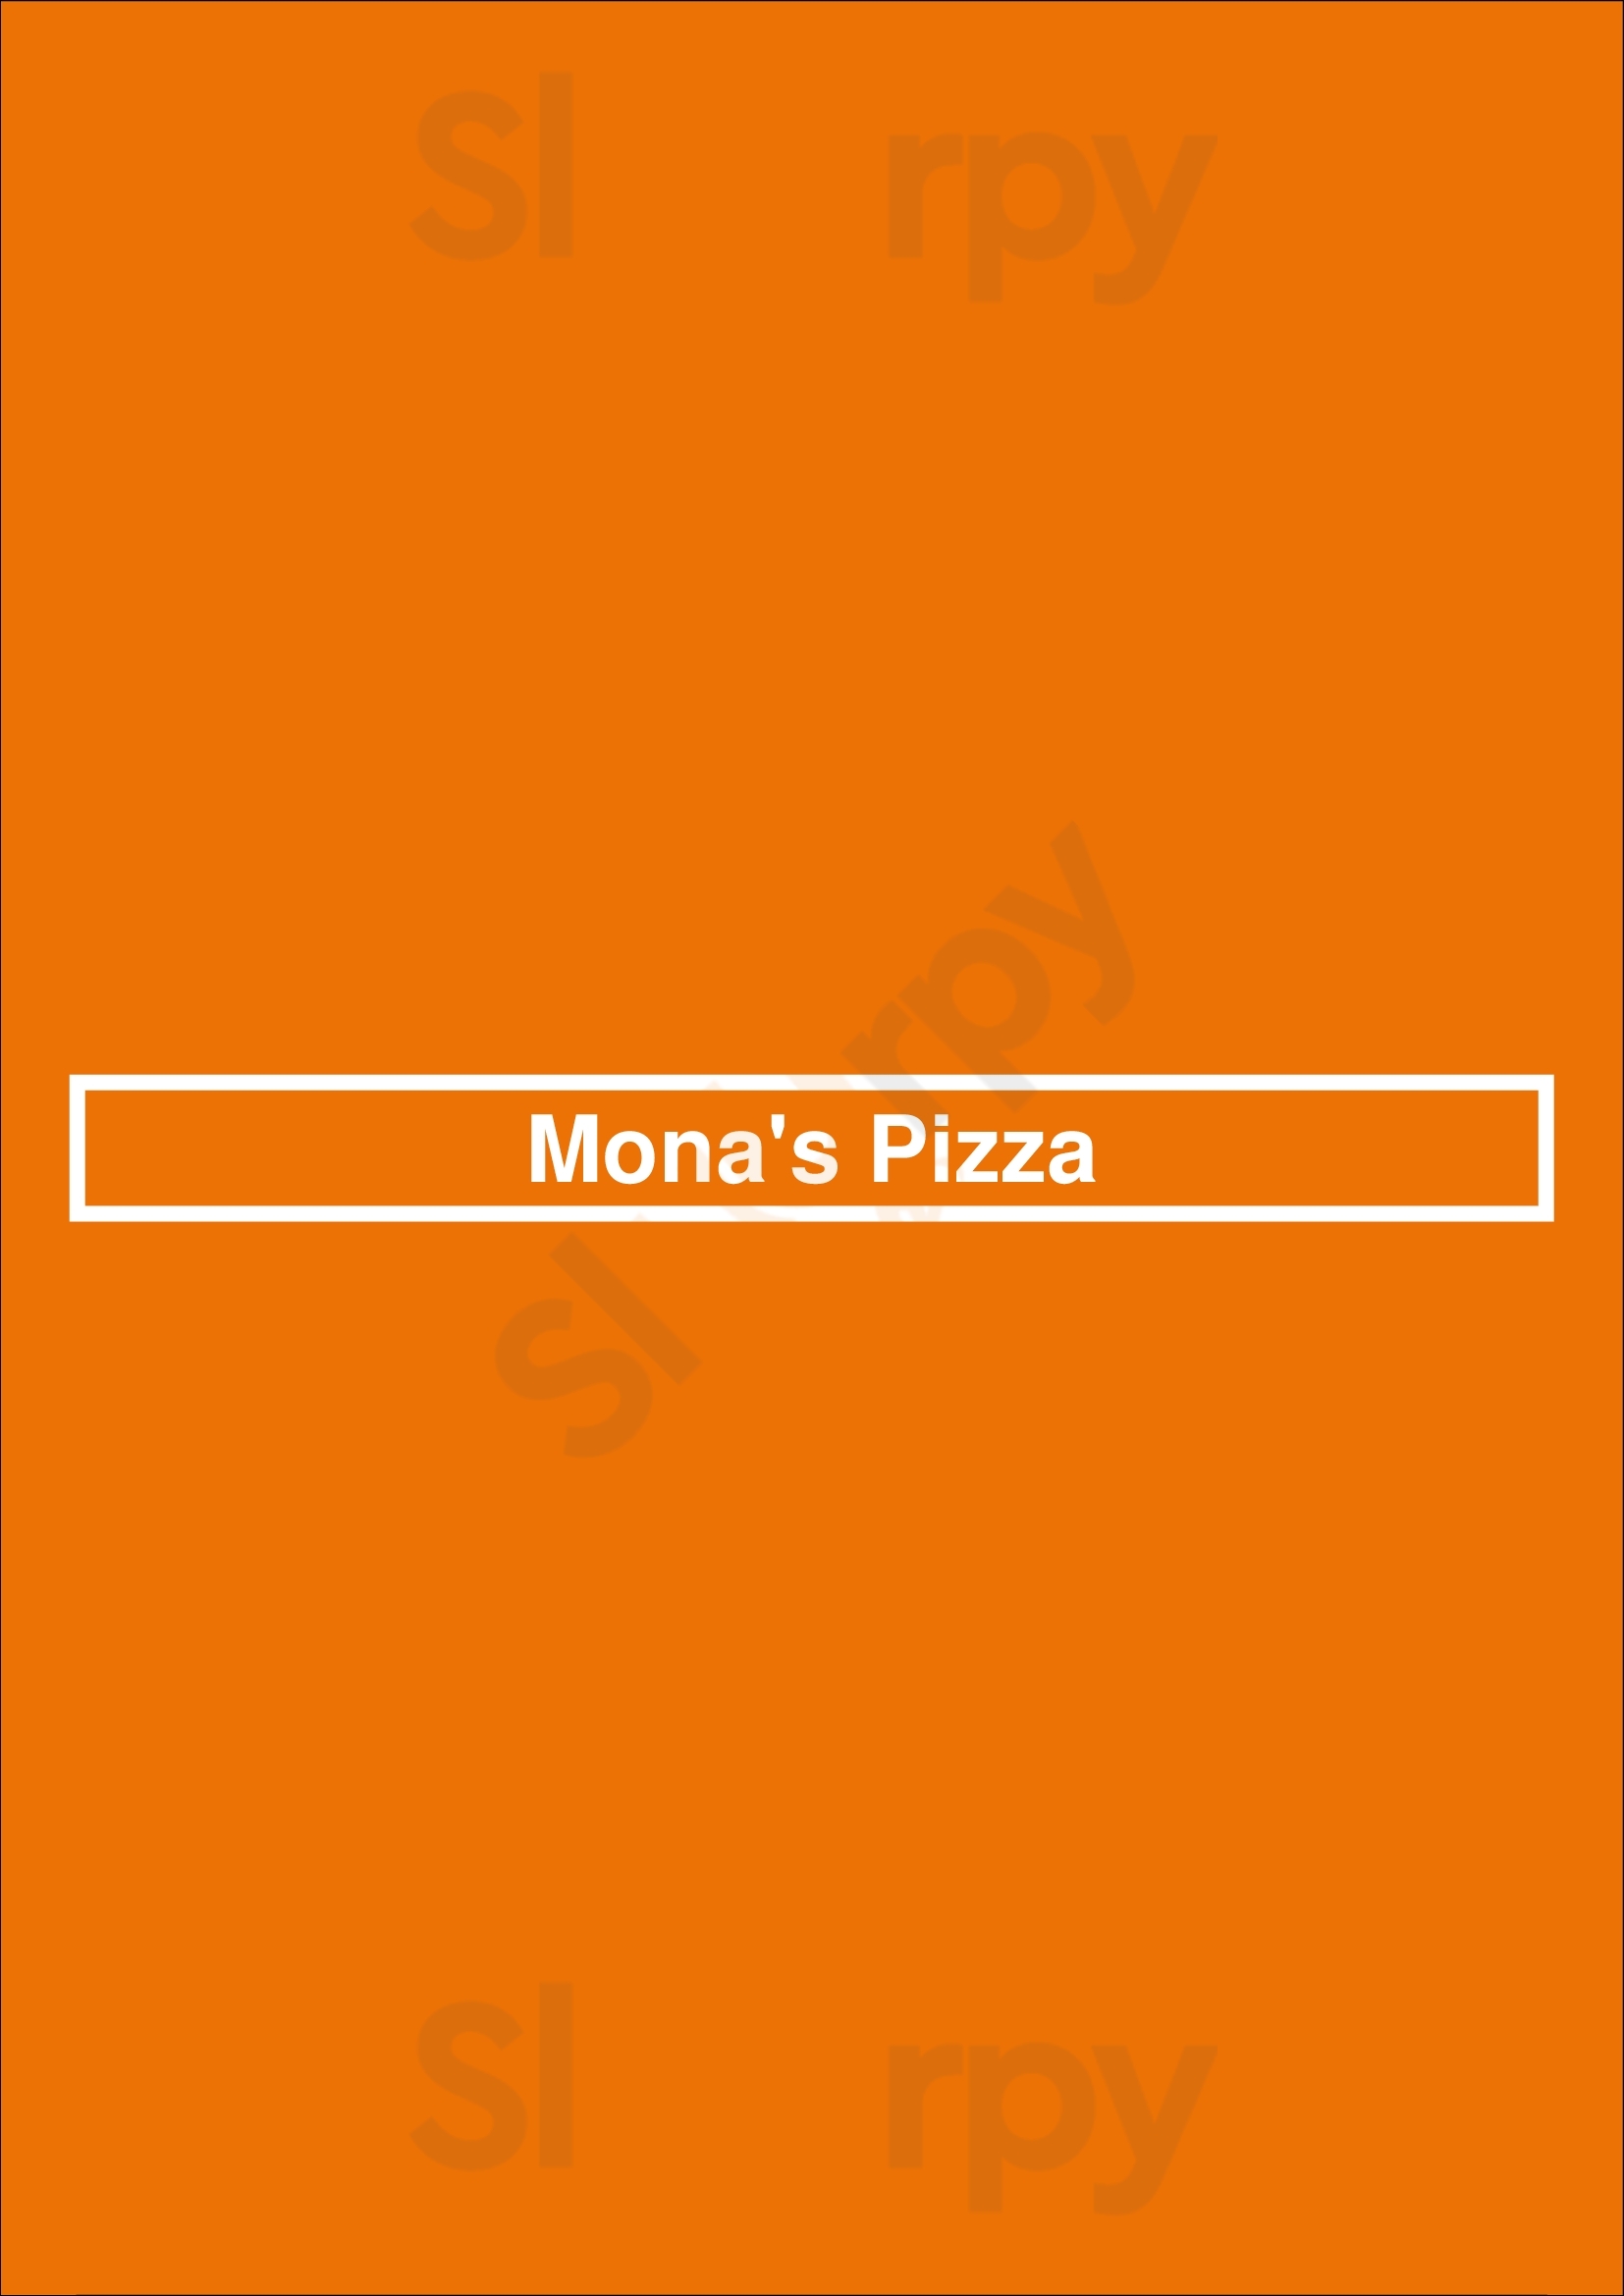 Mona's Pizza Edmonton Menu - 1